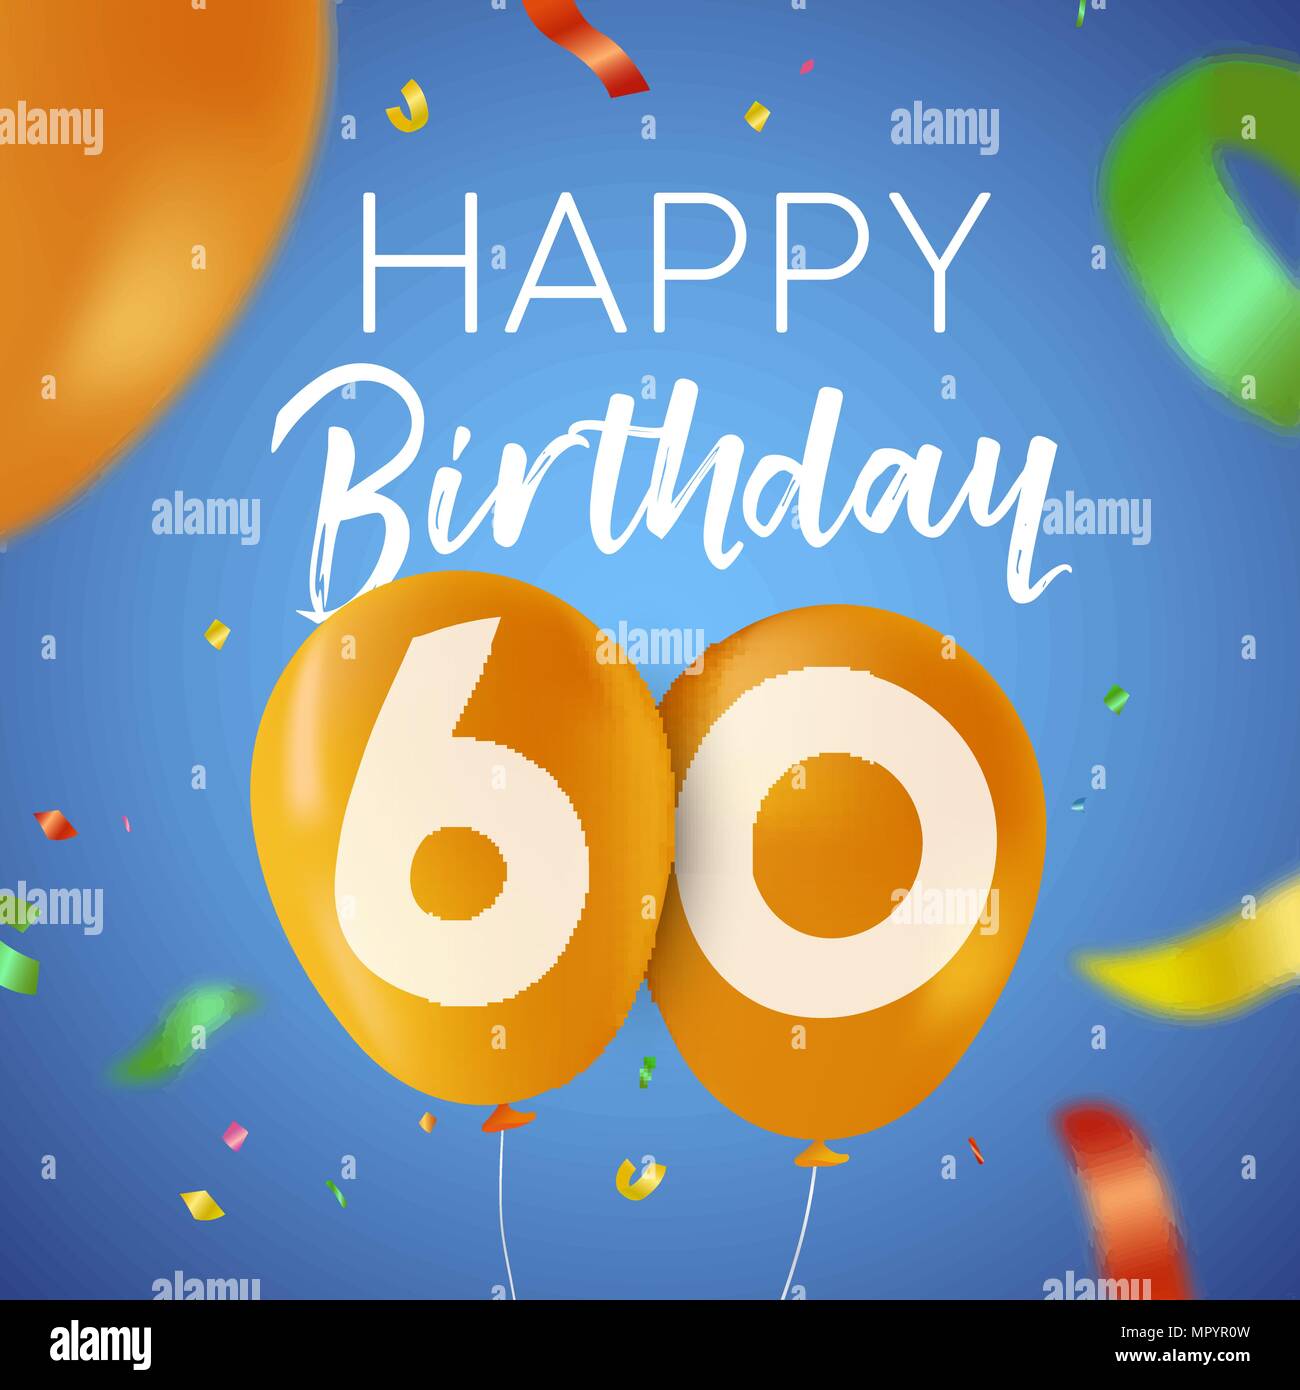 Happy Birthday 60 60 Jahre Spaß Design mit Ballon Anzahl und bunte Konfetti Dekoration. Ideal für Party Einladung oder Grußkarte. EPS 10 vect Stock Vektor